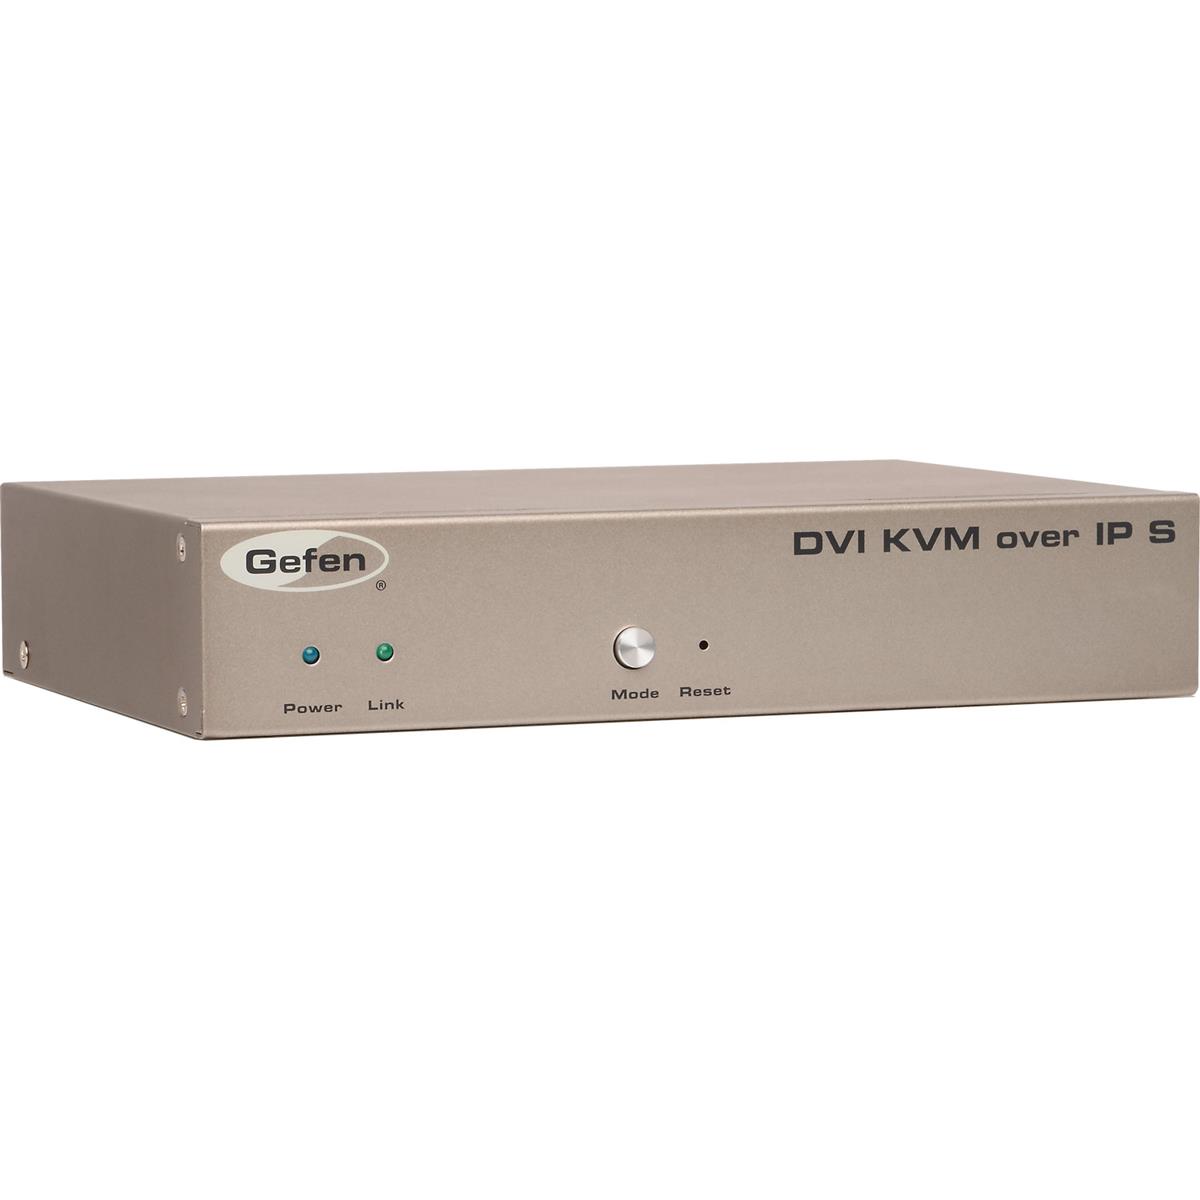 Image of Gefen DVI and KVM Over IP Sender